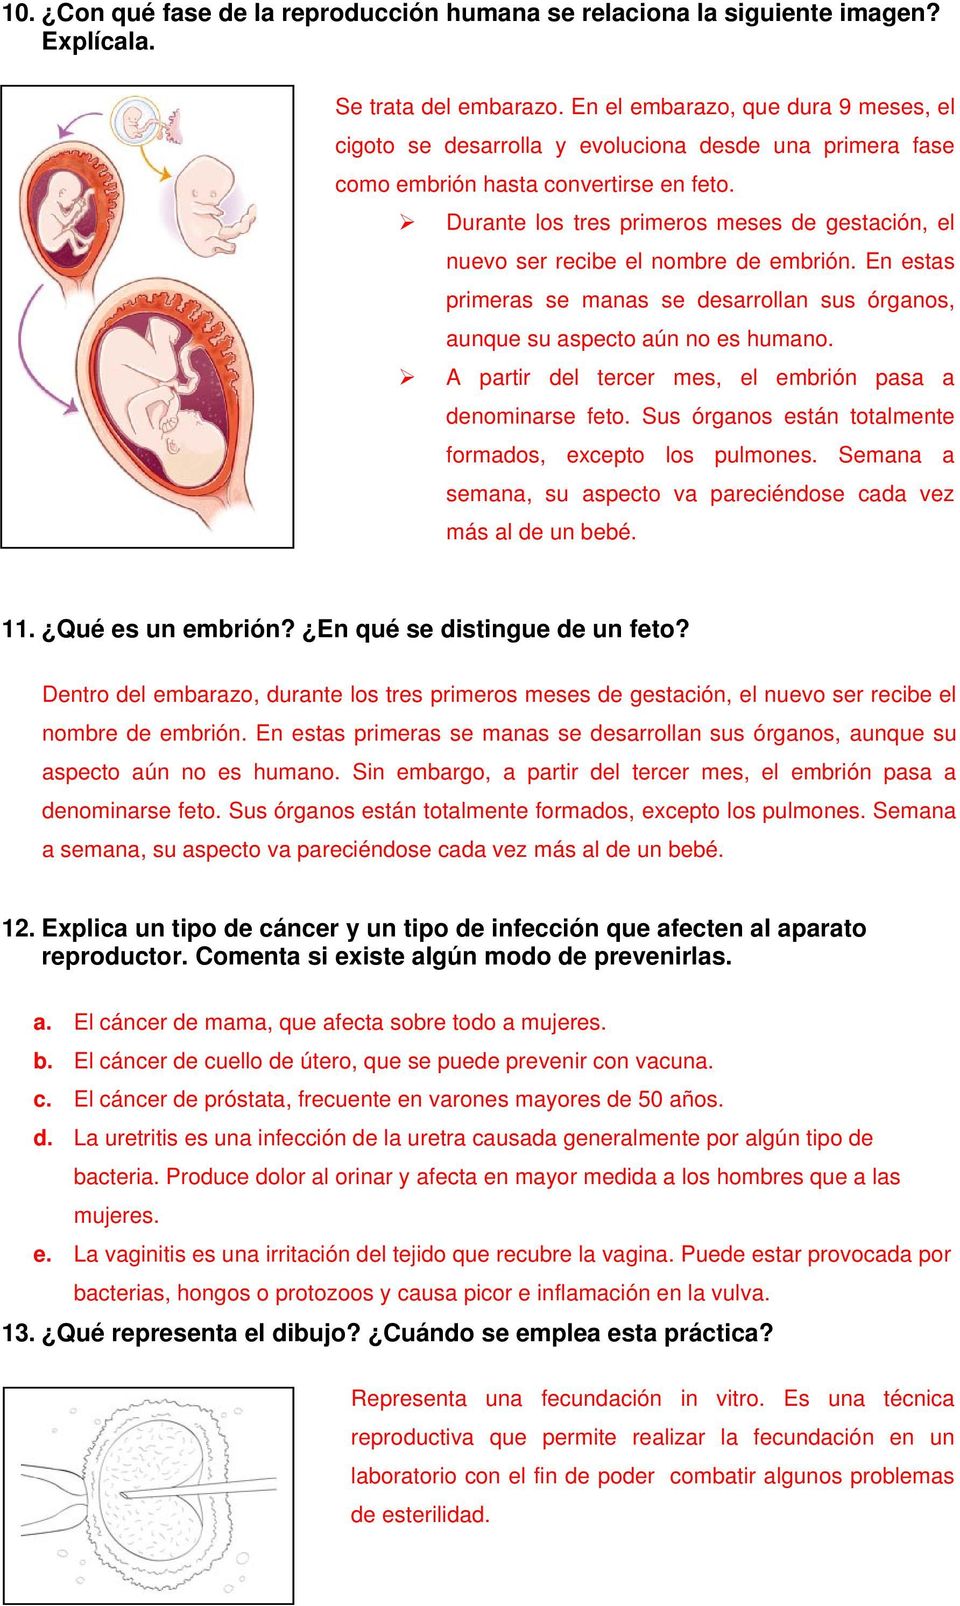 Durante los tres primeros meses de gestación, el nuevo ser recibe el nombre de embrión. En estas primeras se manas se desarrollan sus órganos, aunque su aspecto aún no es humano.